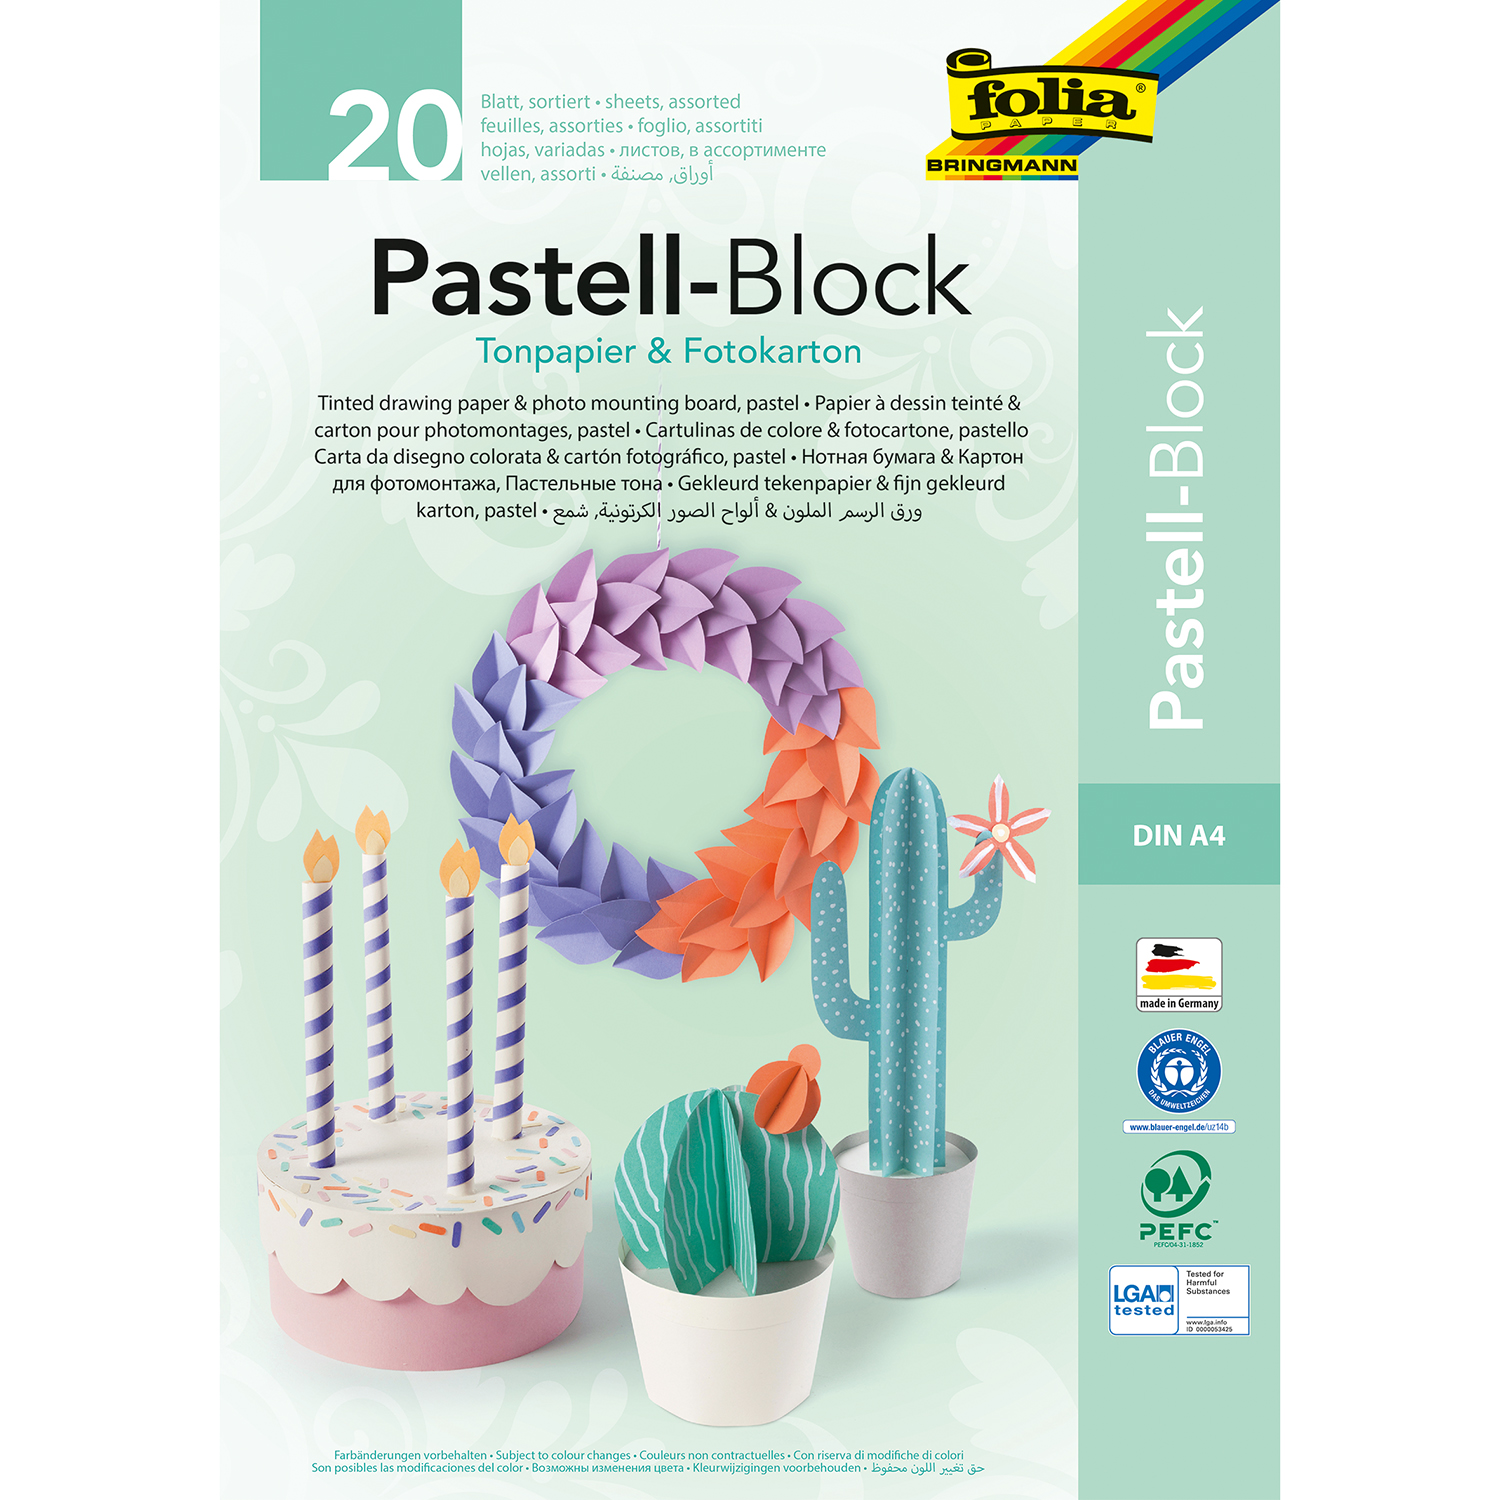 NEU Pastell-Block, Tonpapier und Fotokarton A4, 20 Blatt sortiert